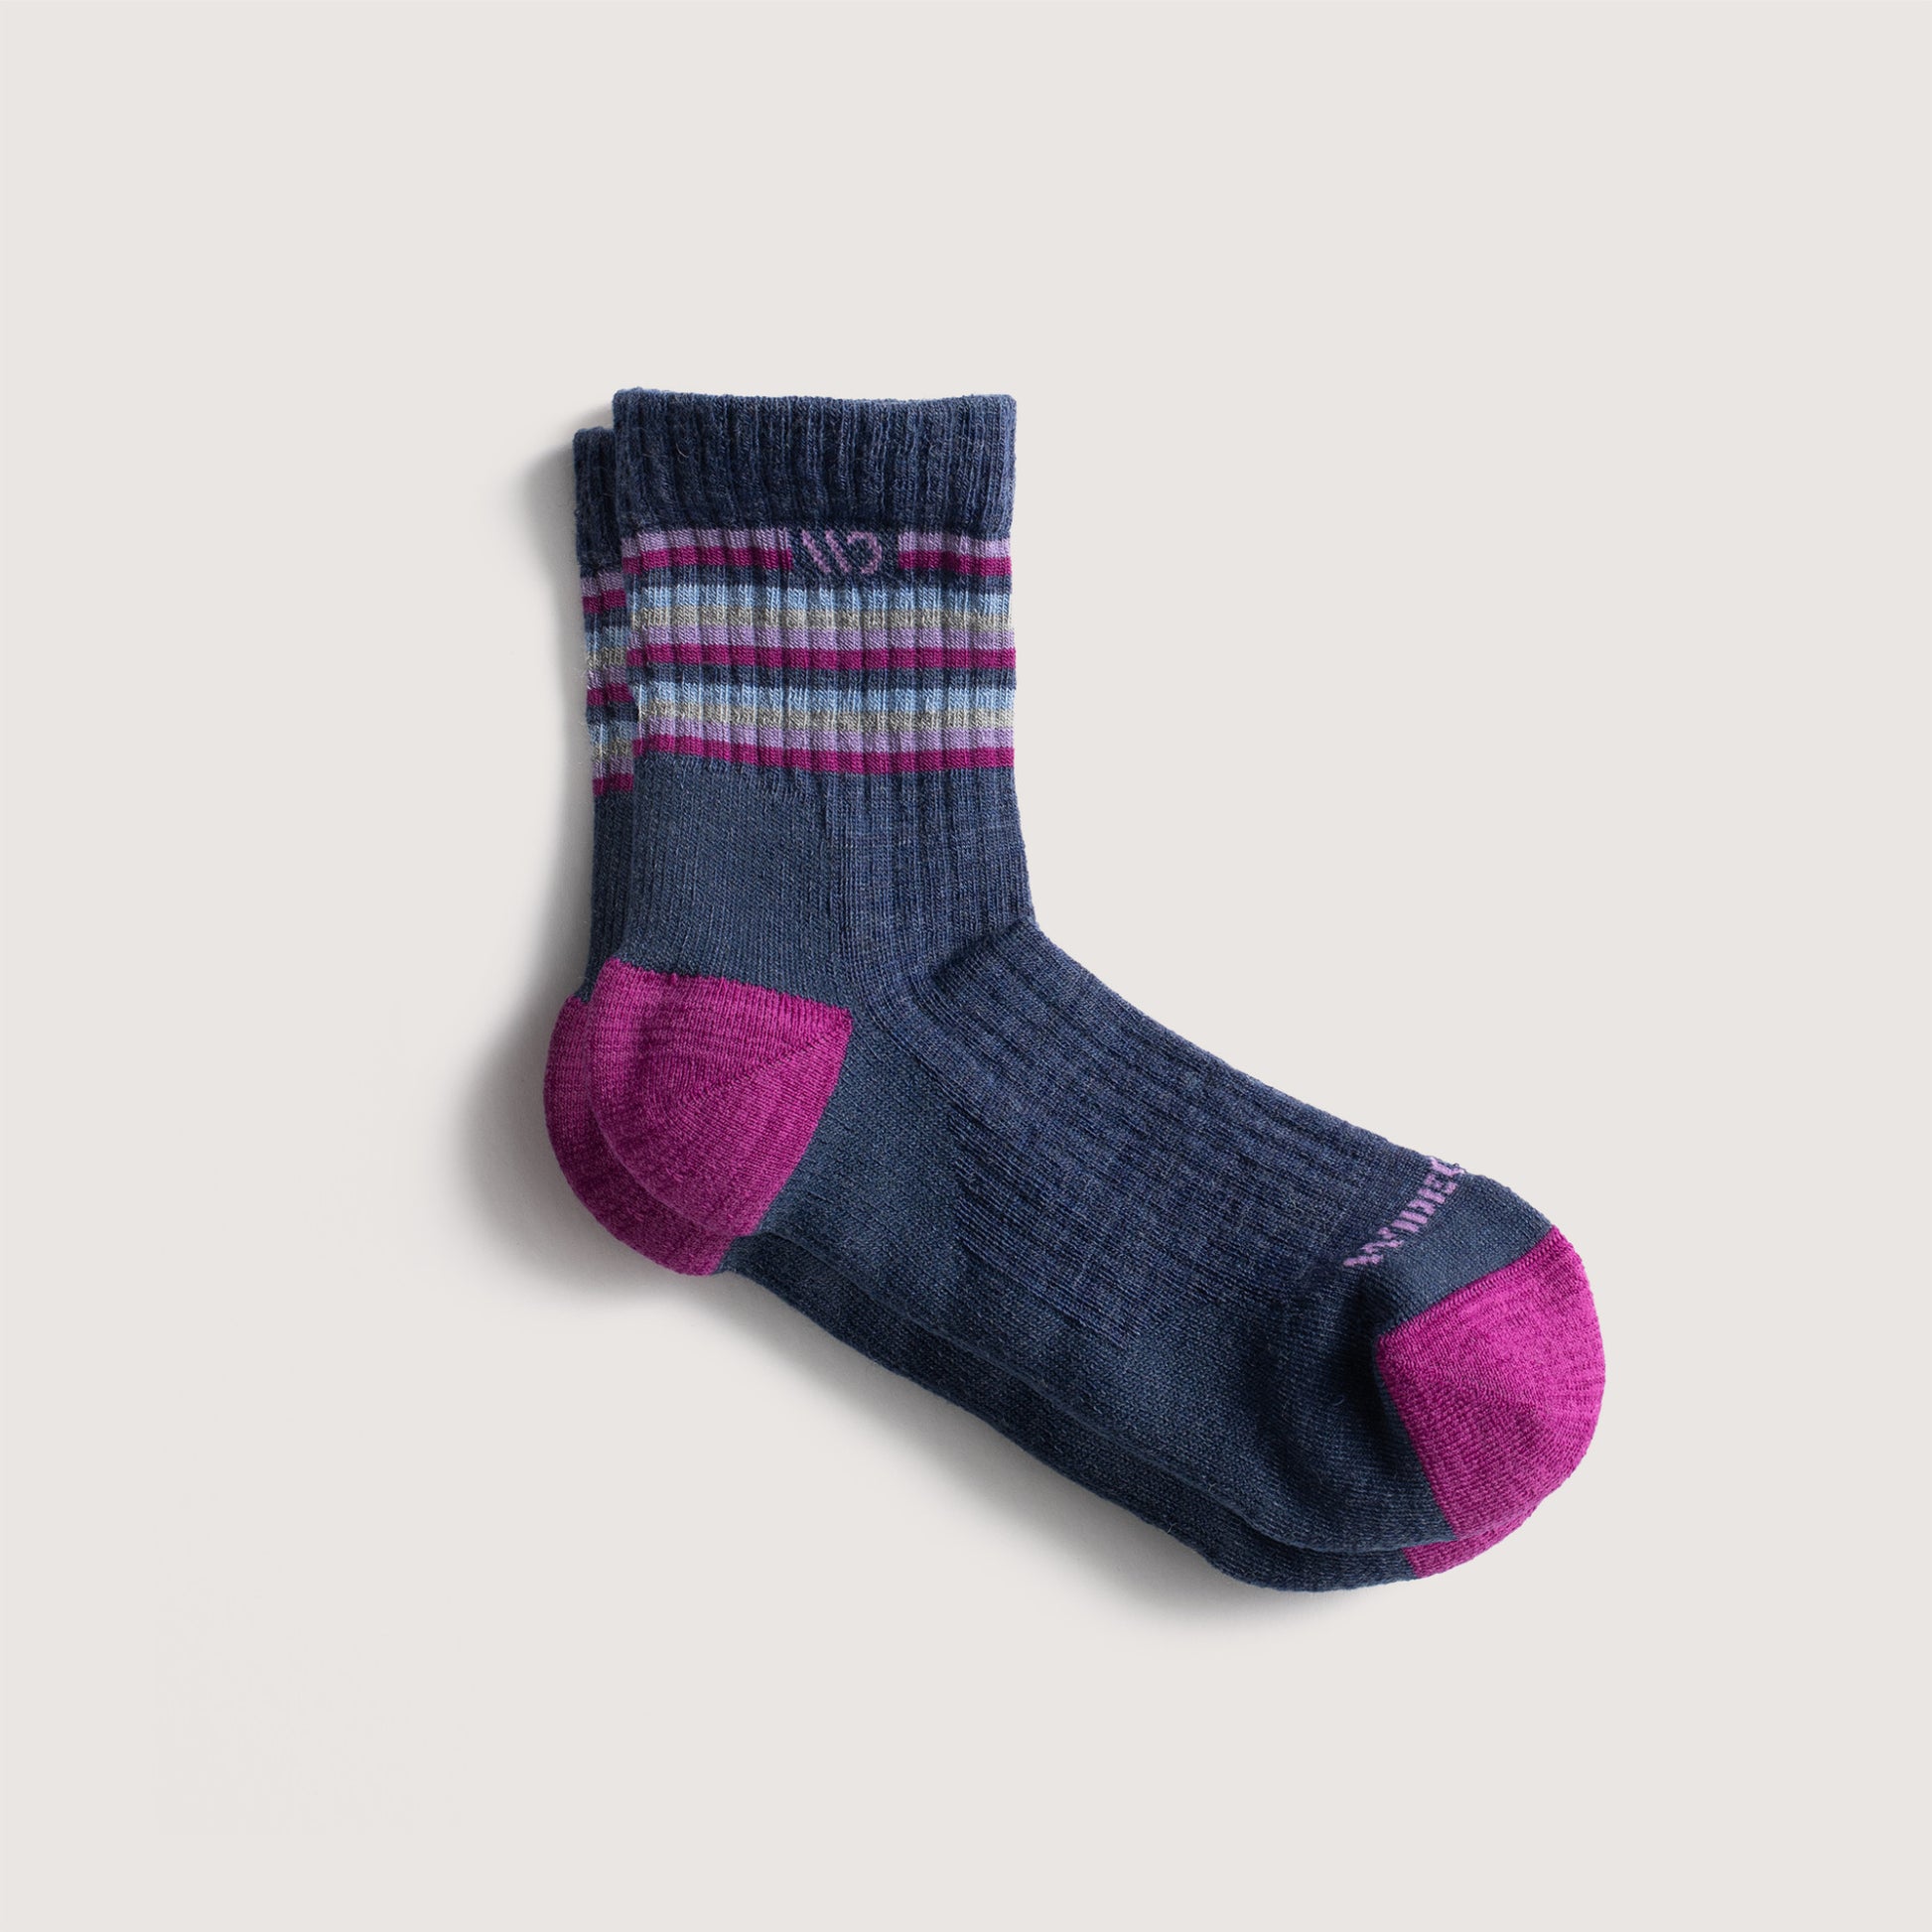 Socks featuring fuchsia heel/toe, lavender logo, denim body, and stripes on cuff --Denim